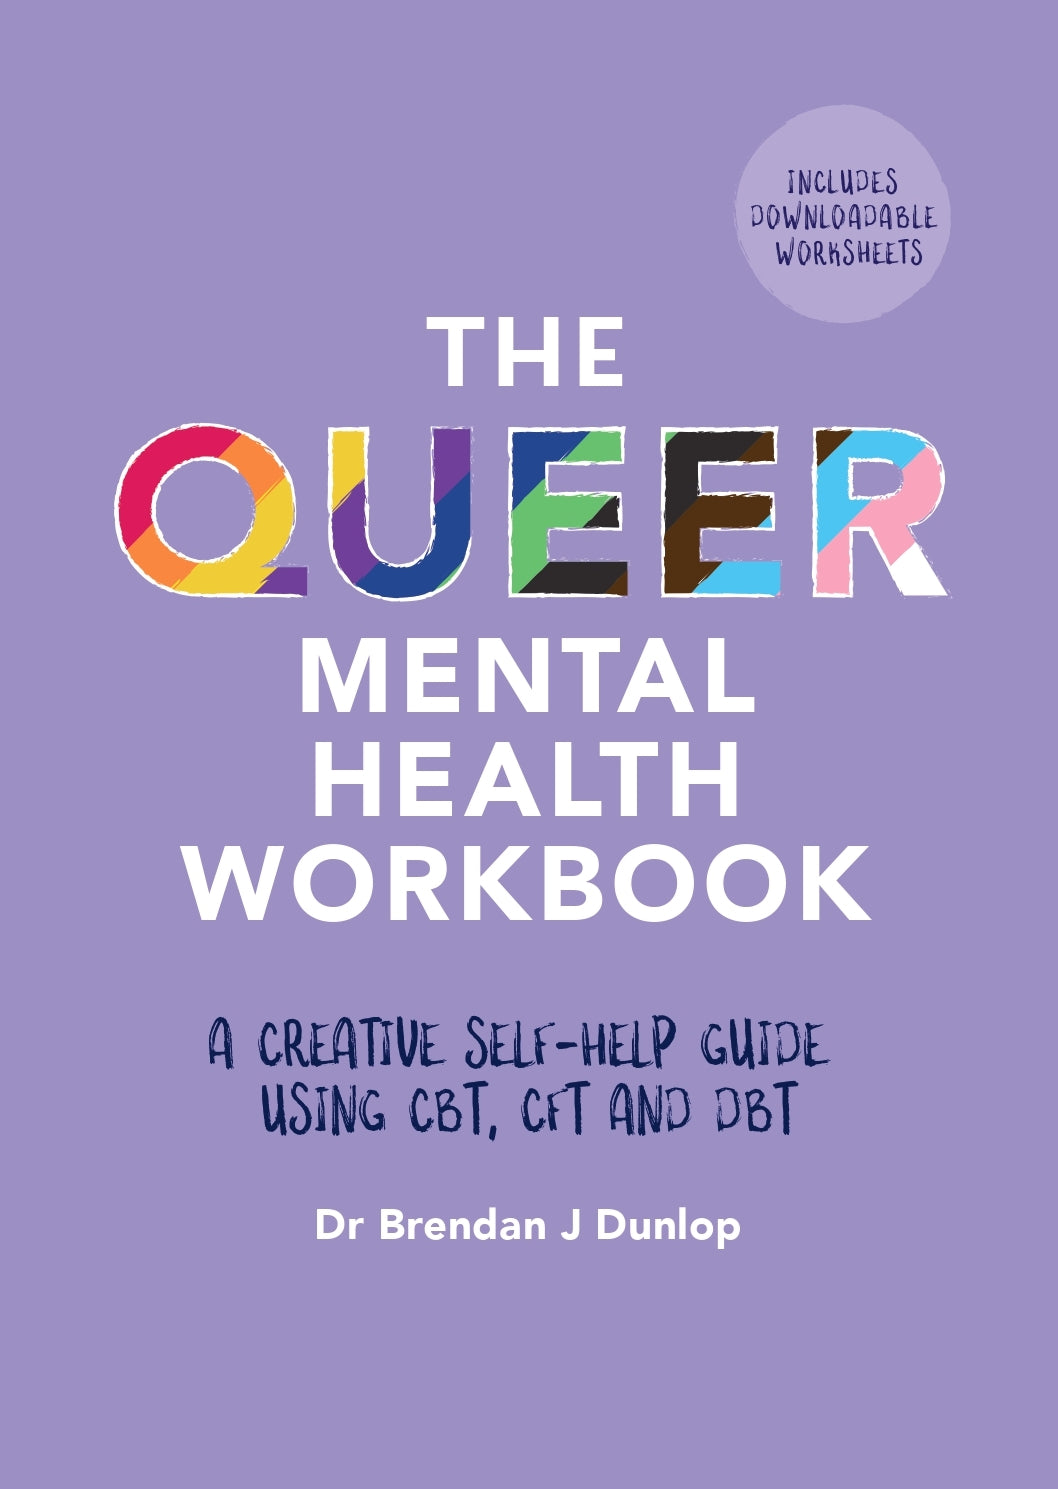 The Queer Mental Health Workbook by Dr. Brendan J. Dunlop